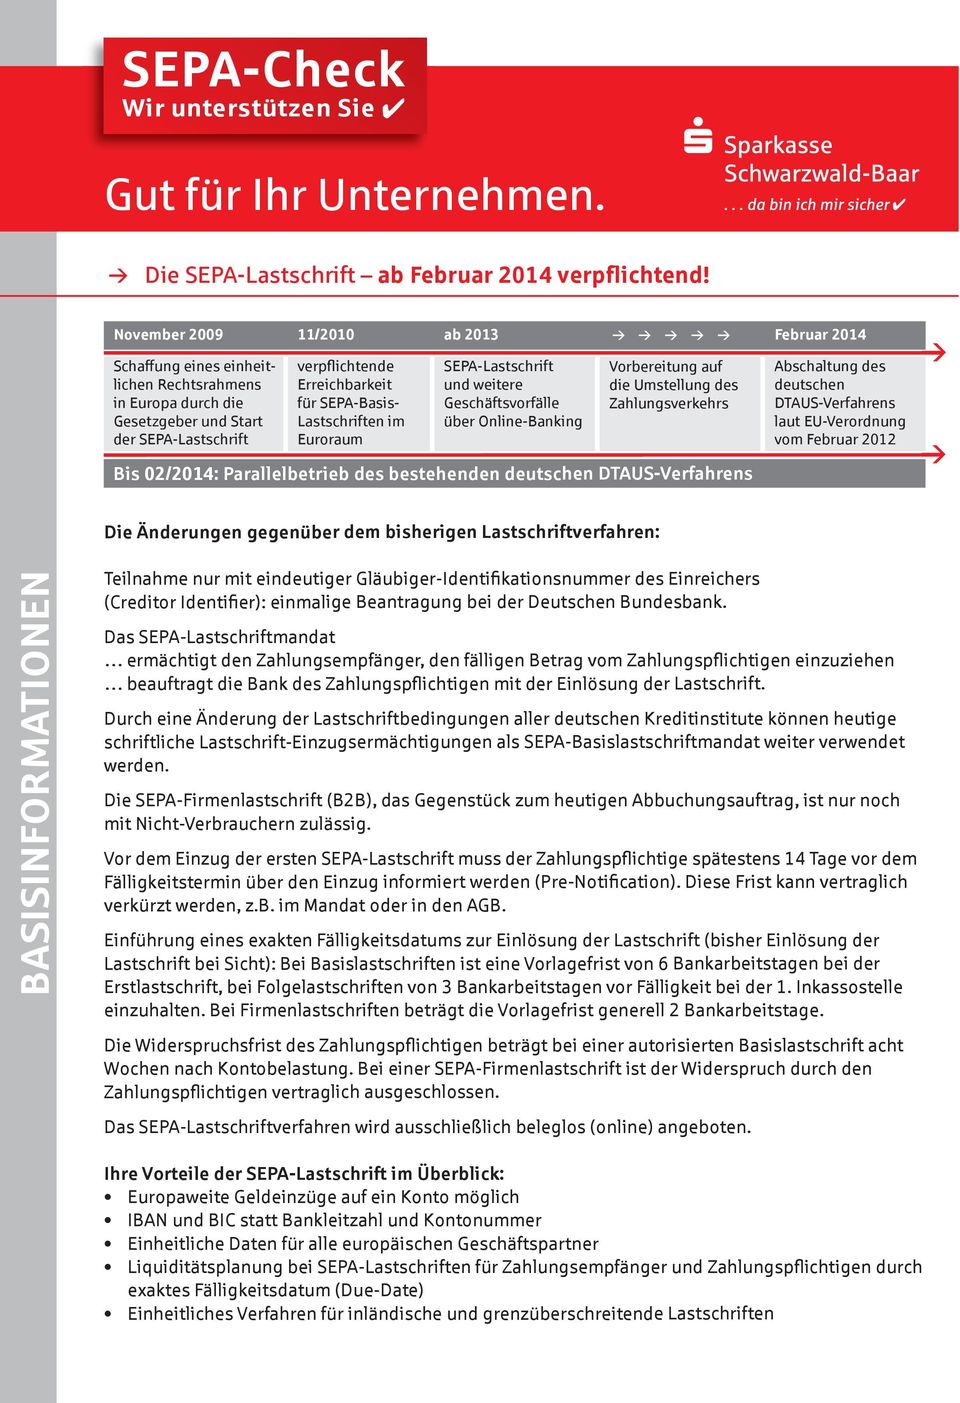 a 2013 SEPA-Lastschrift und weitere Geschäftsvorfälle üer Online-Banking Vorereitung auf die Umstellung des Zahlungsverkehrs Bis 02/2014: Paralleletrie des estehenden deutschen DtAUS-Verfahrens